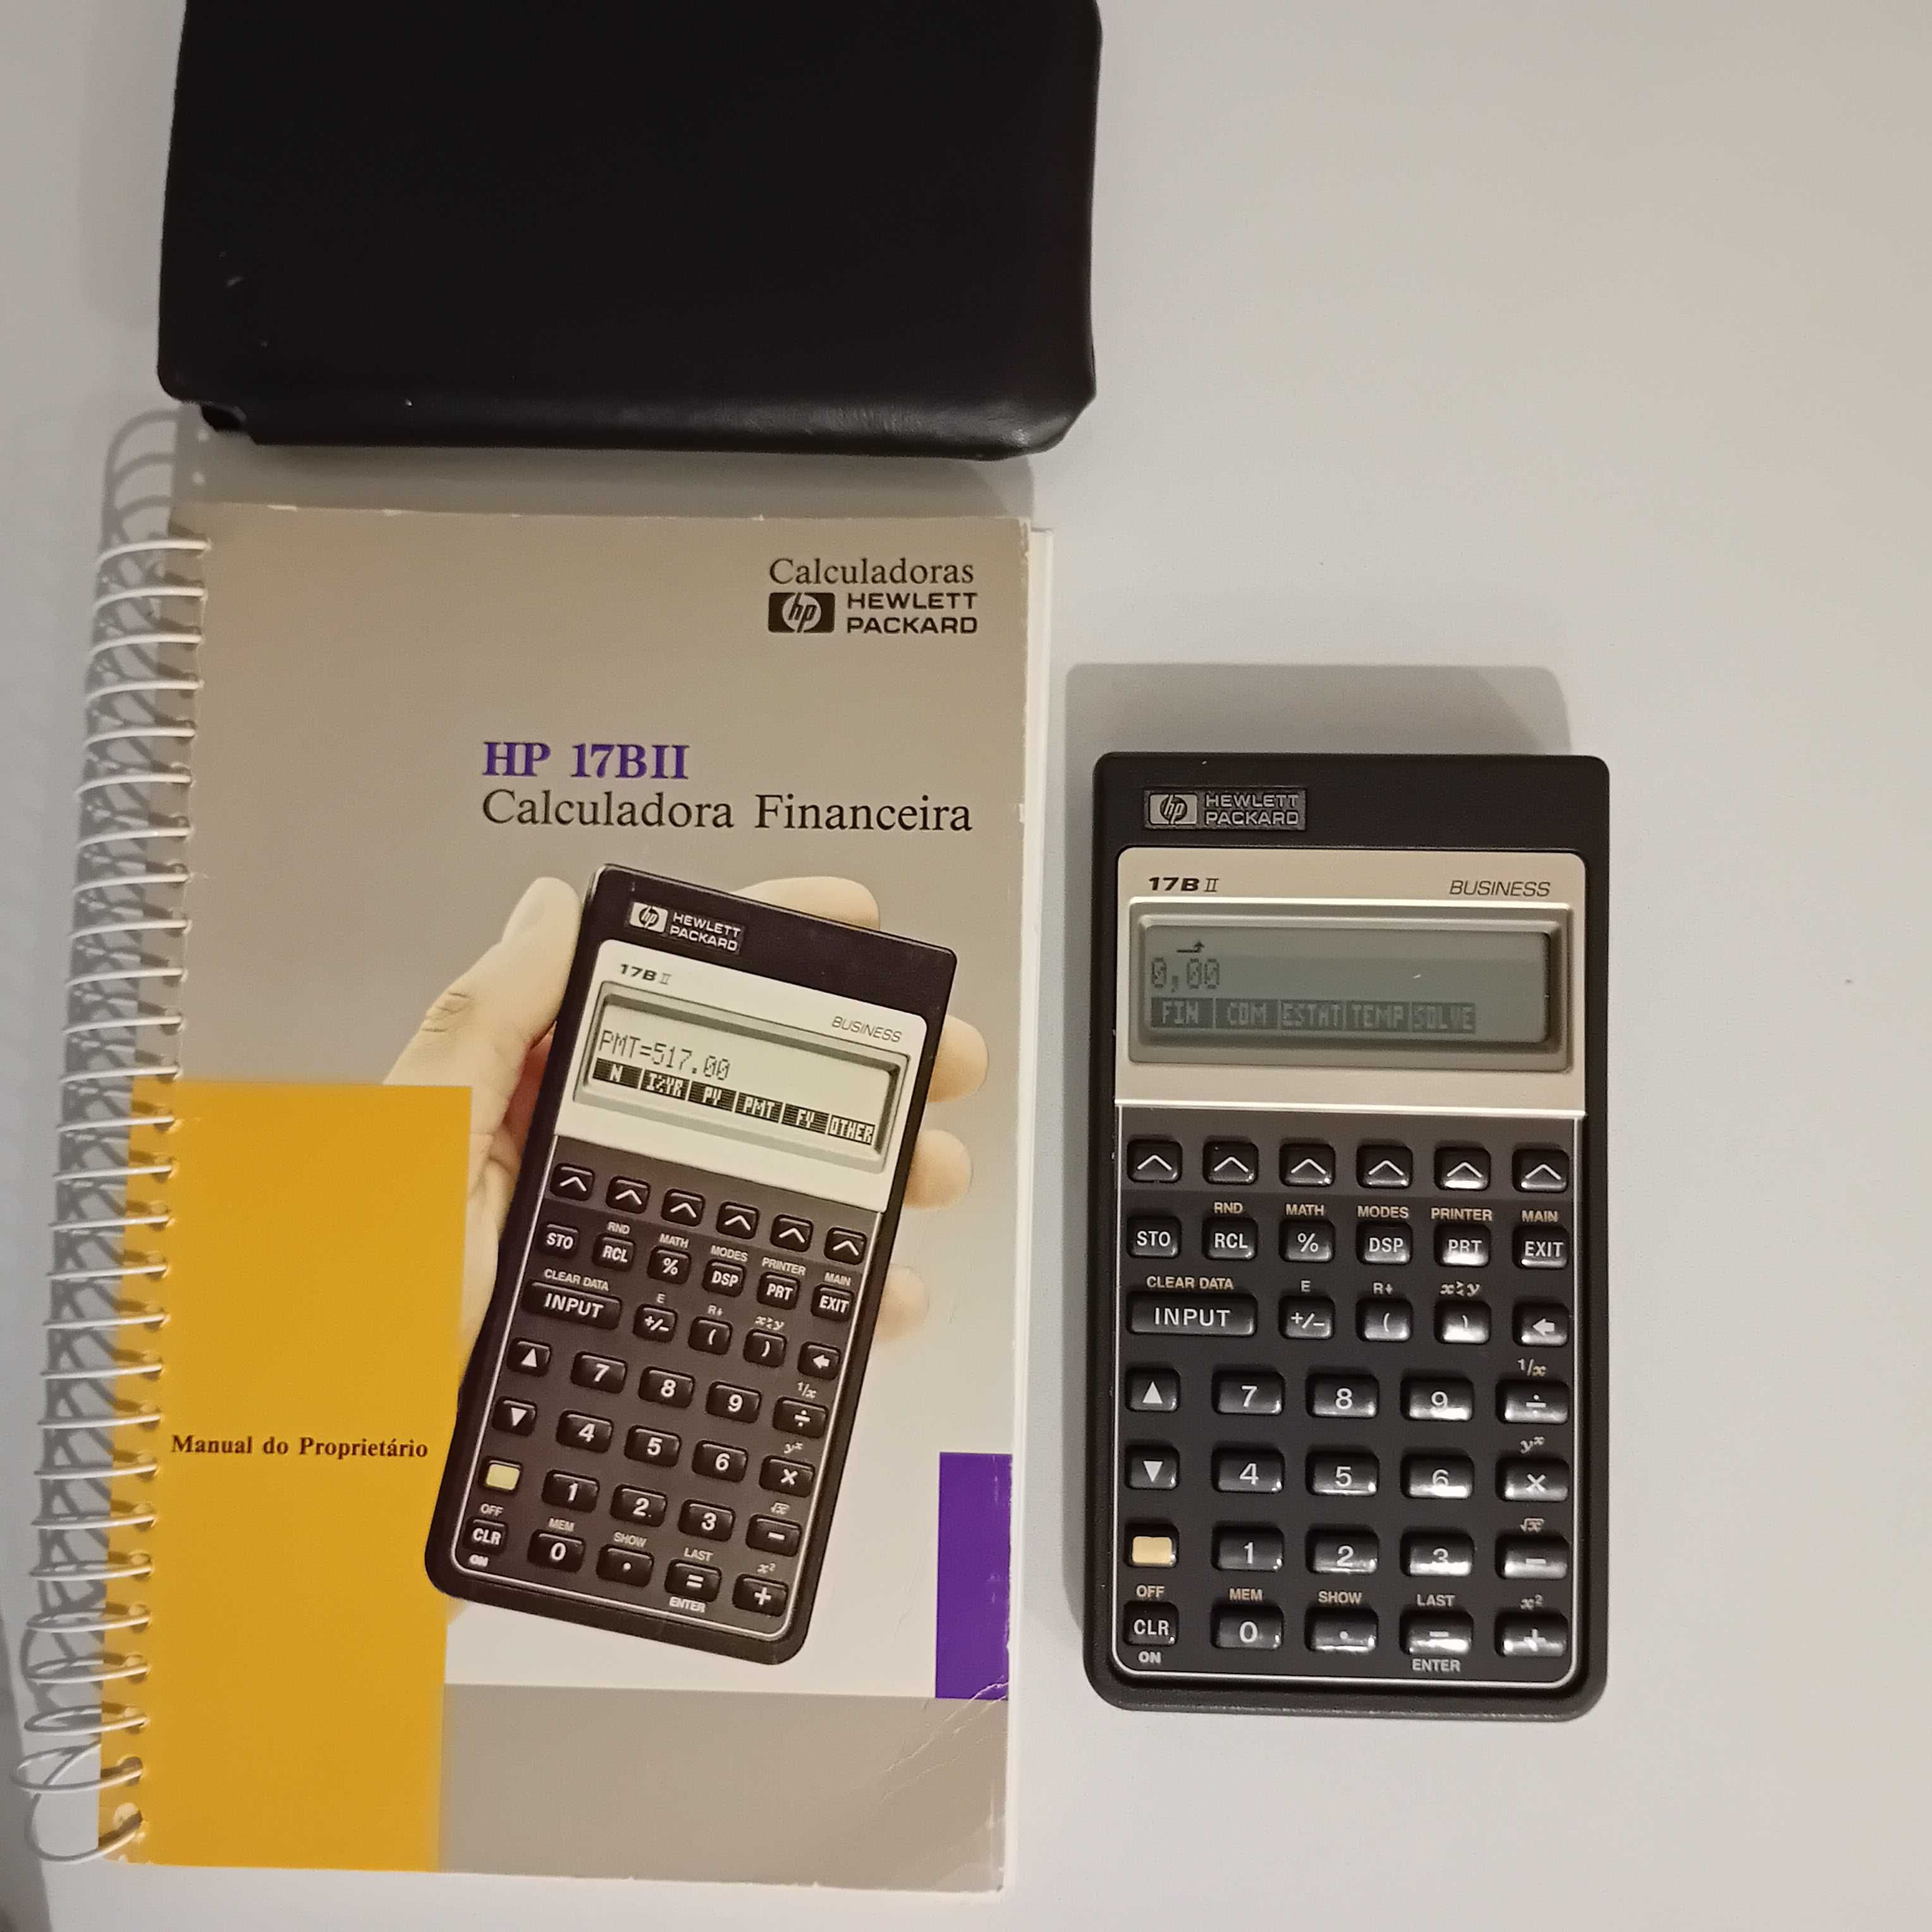 HP 17 BII Calculadora Financeira de Bolso, com manual de instruções